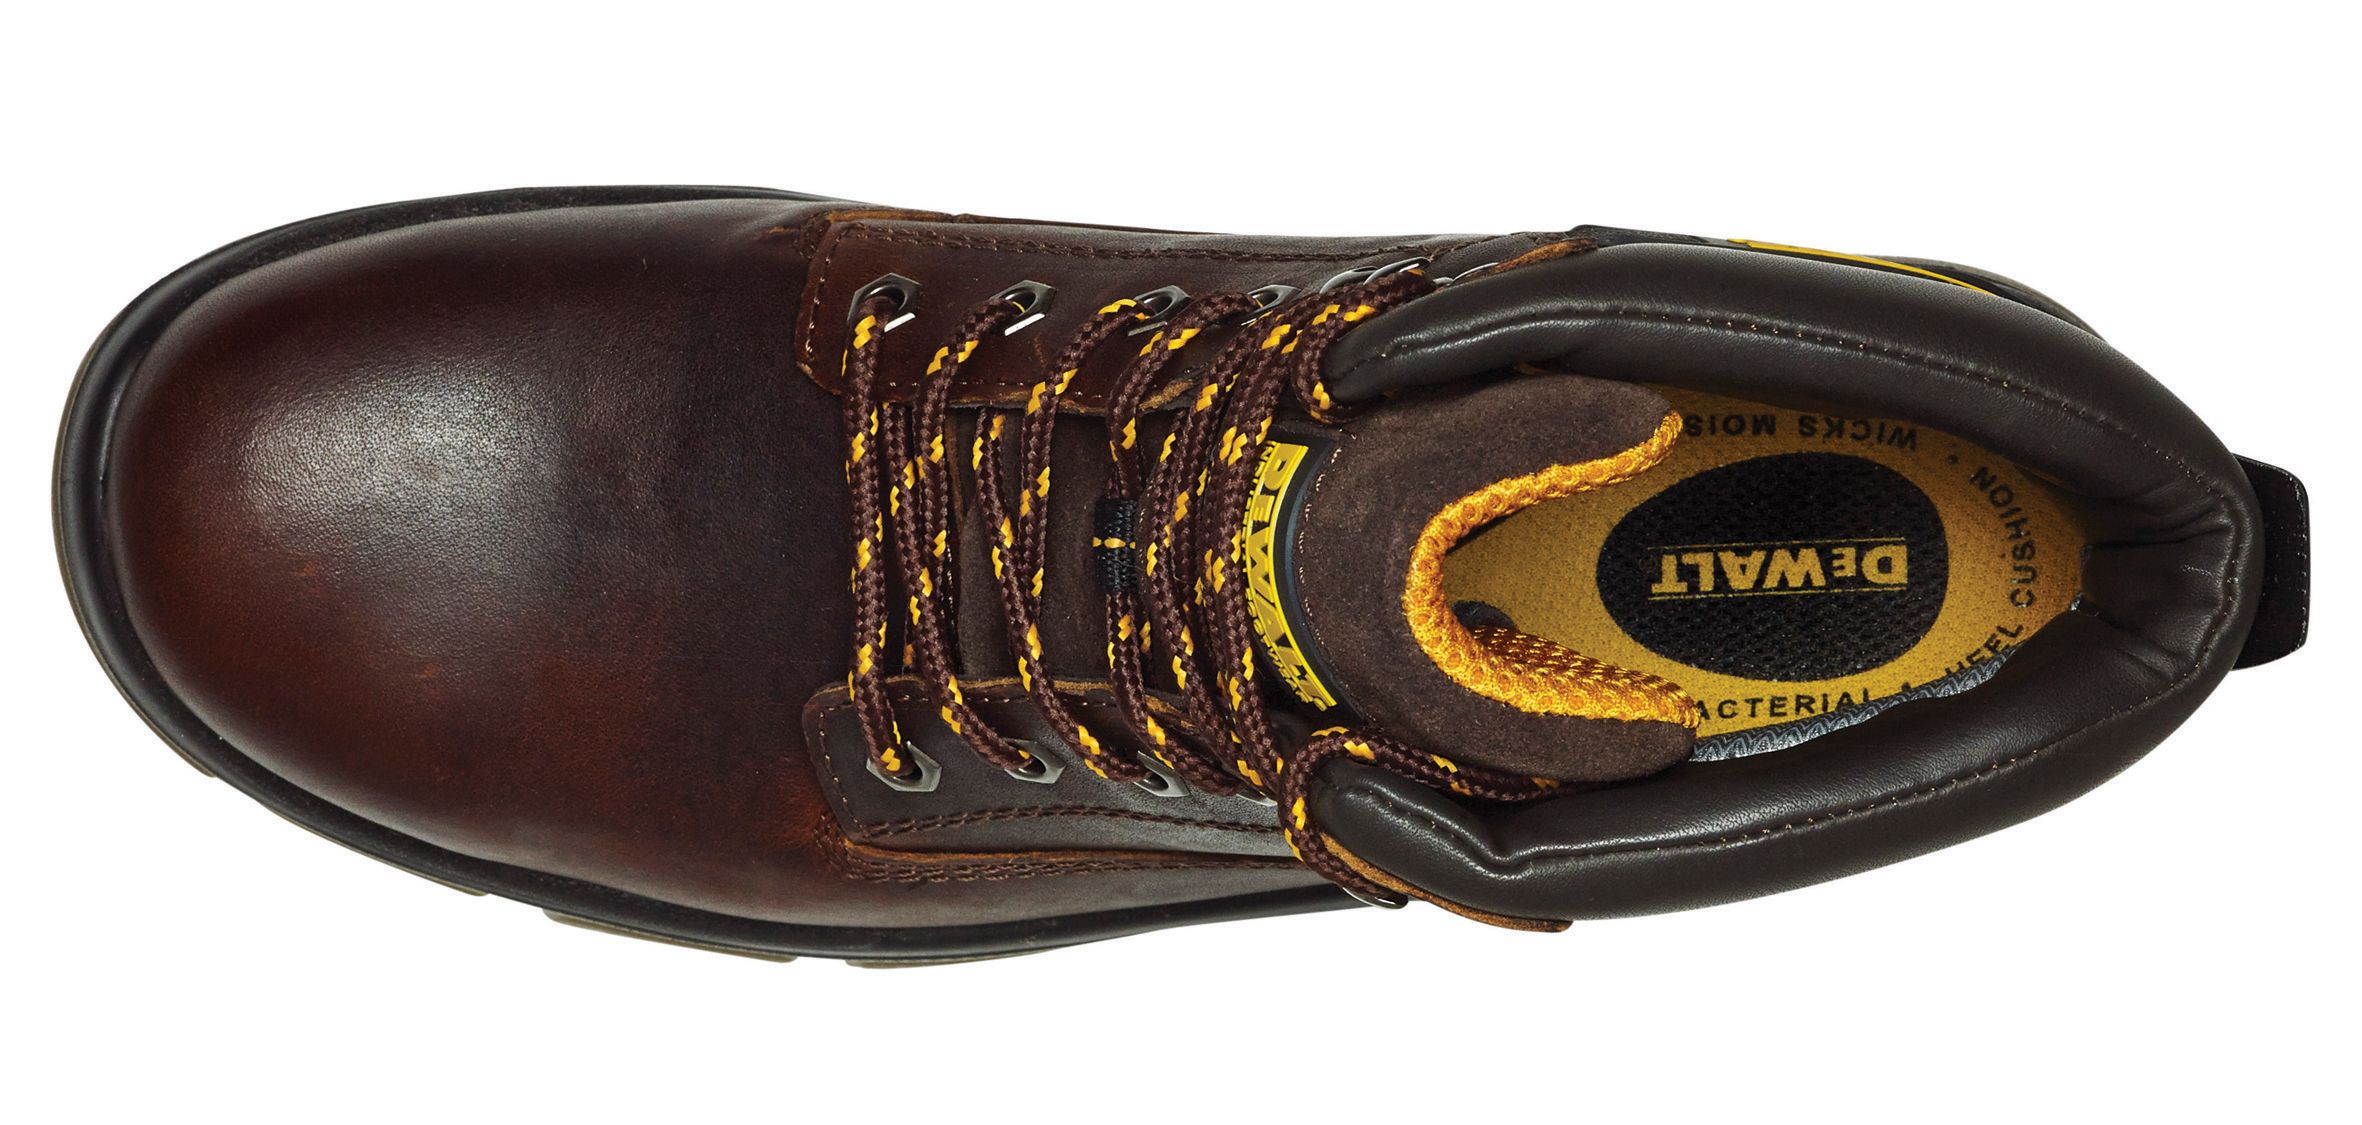 DeWalt Titanium Men's Tan Safety boots, Size 8